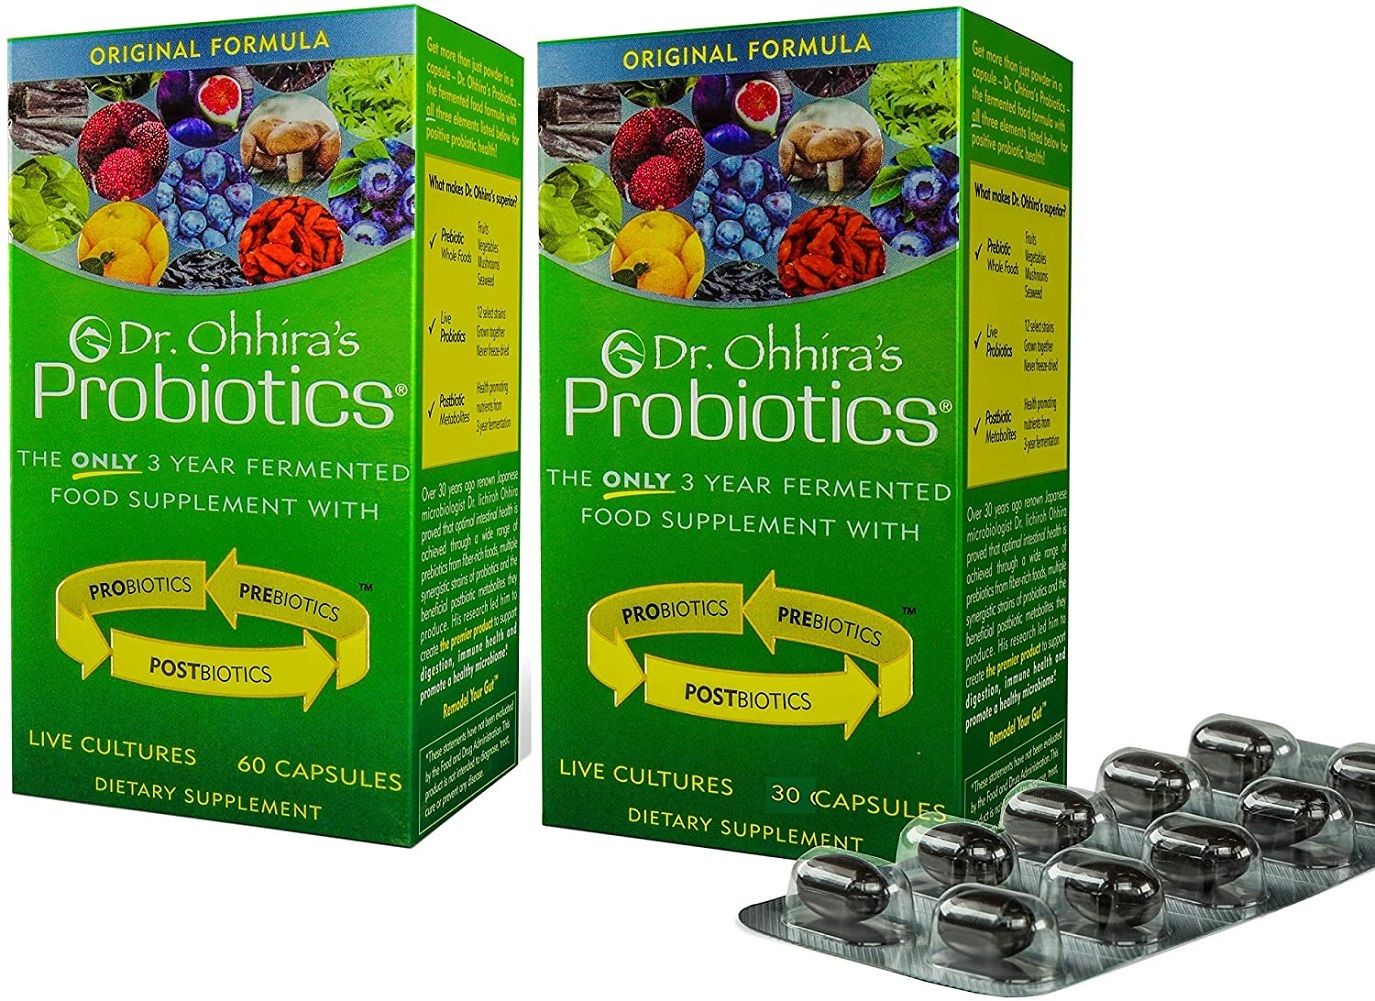 Dr. Ohhira's Probiotics 60 Capsules each, Original Formula - 2 Pack